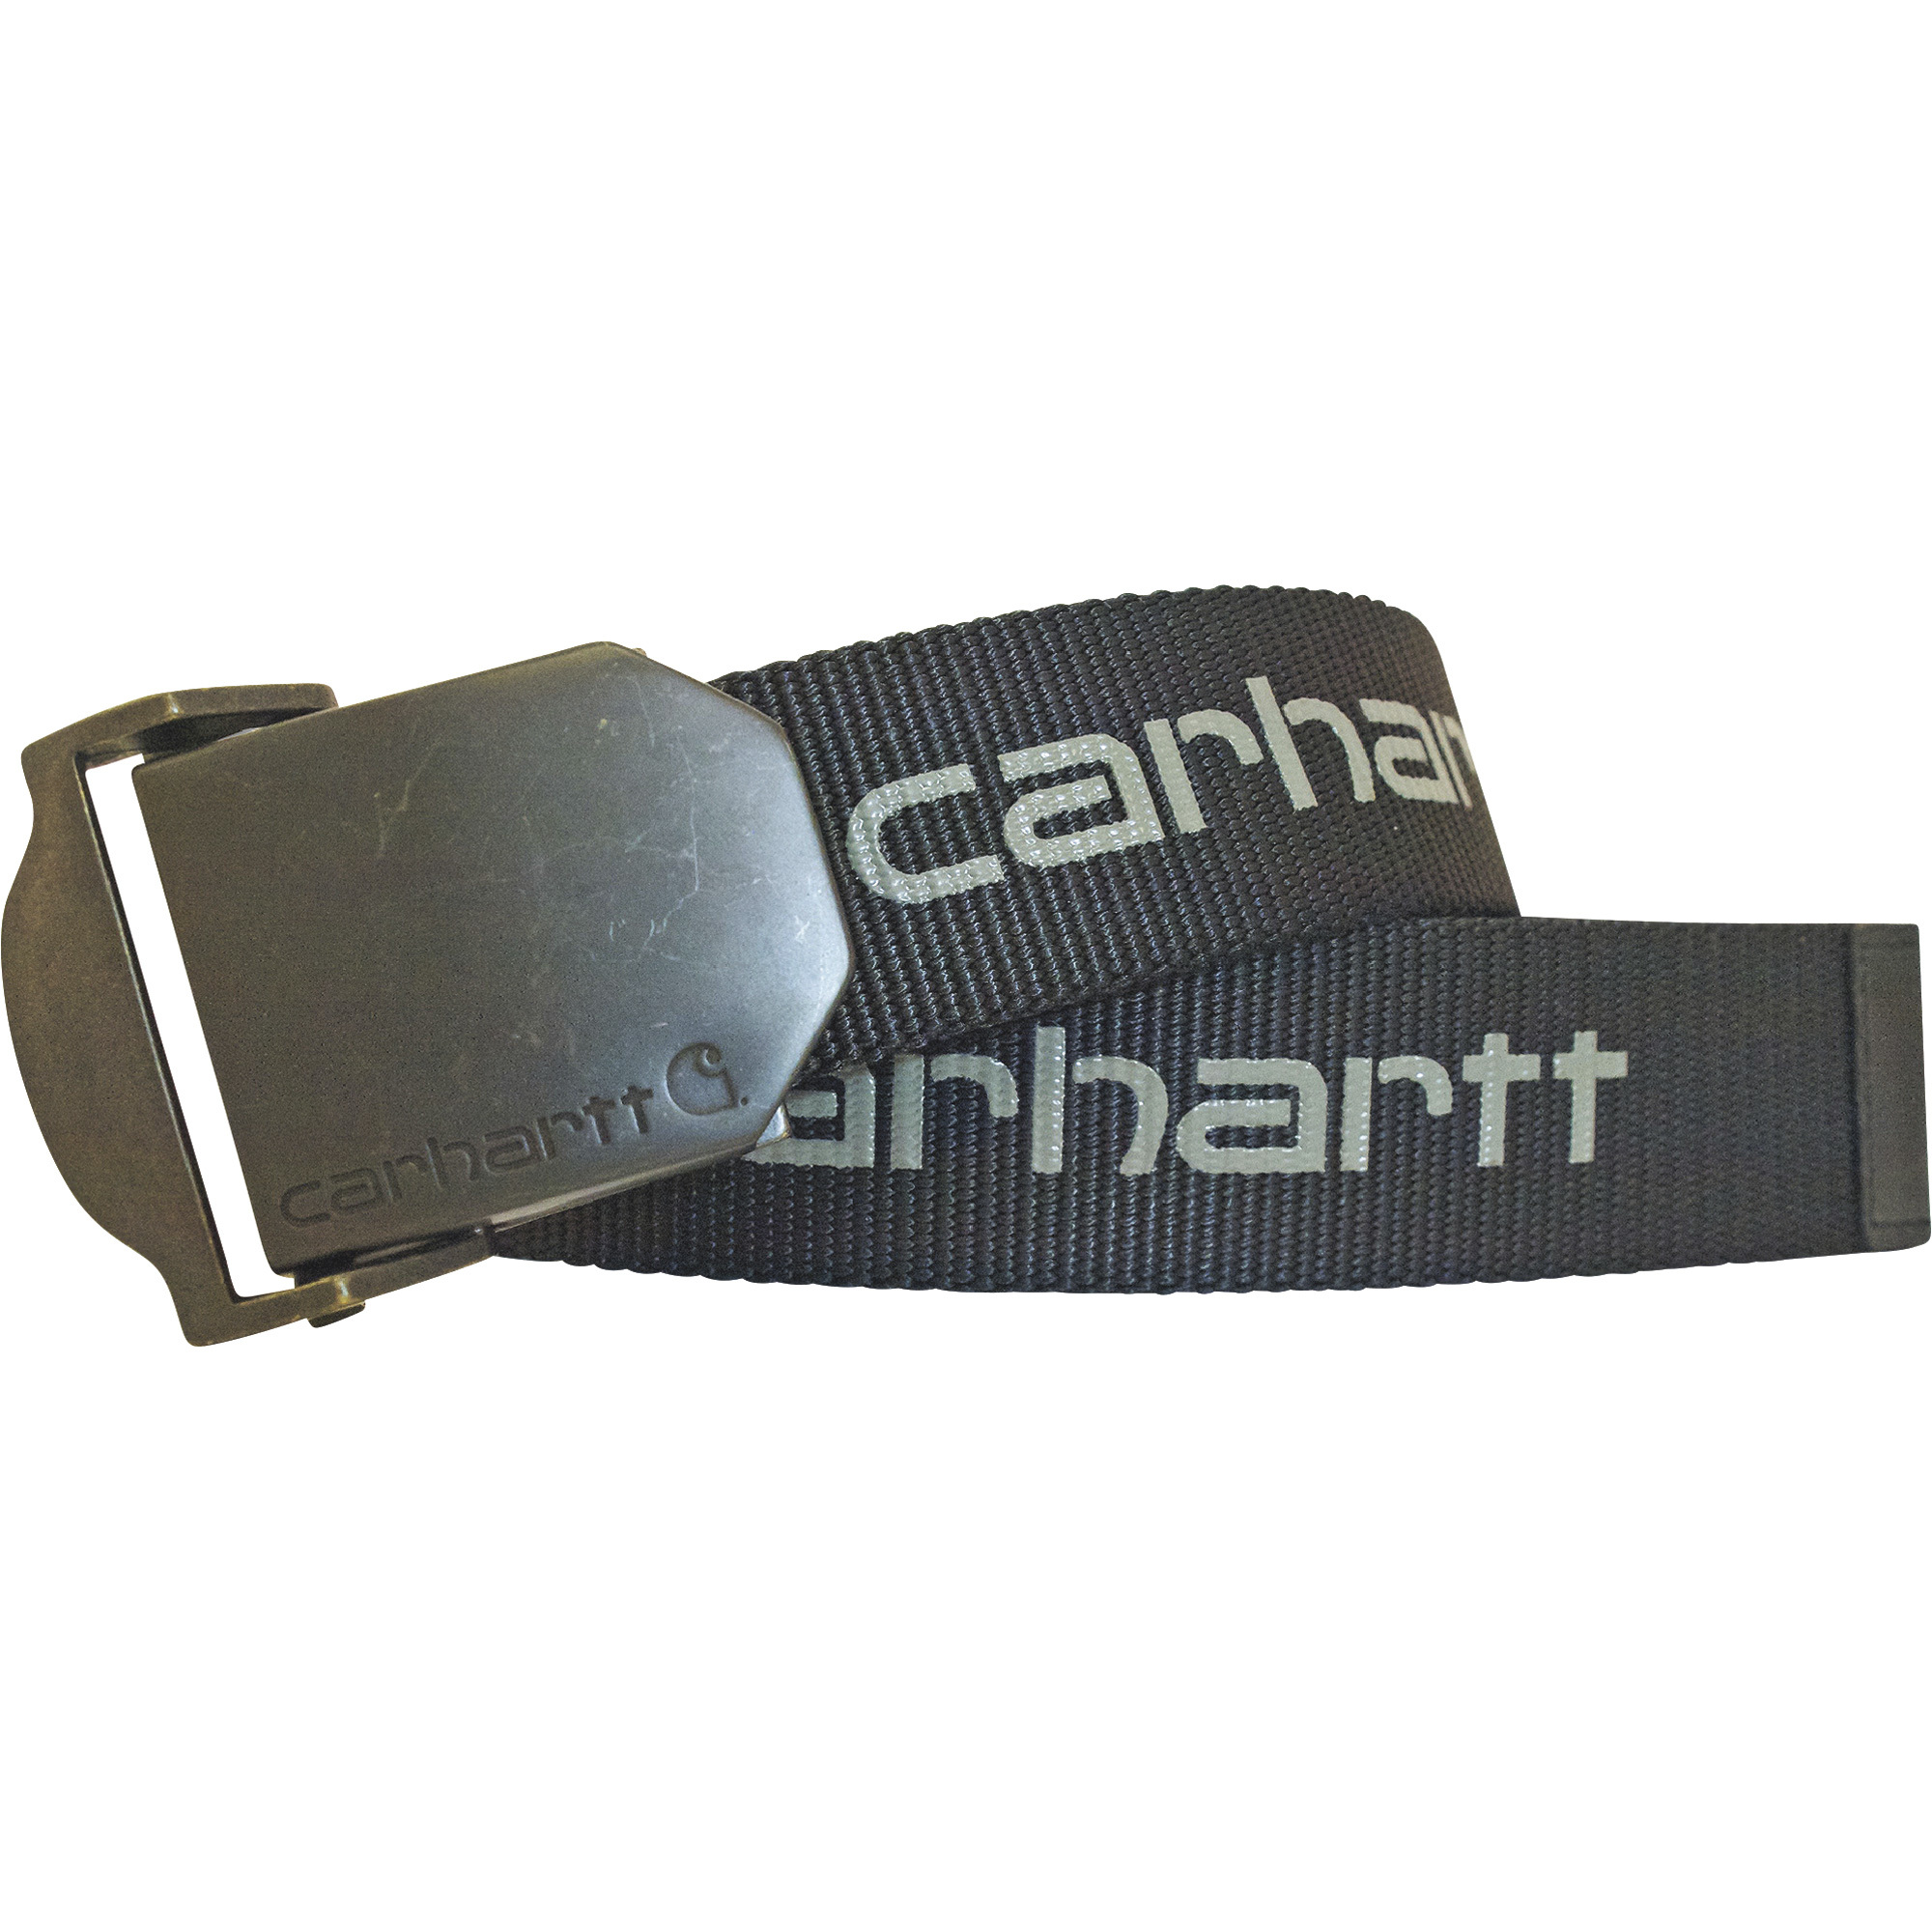 Carhartt Men's Web Belt â Gray, Large, Model CH-2260-027-LG